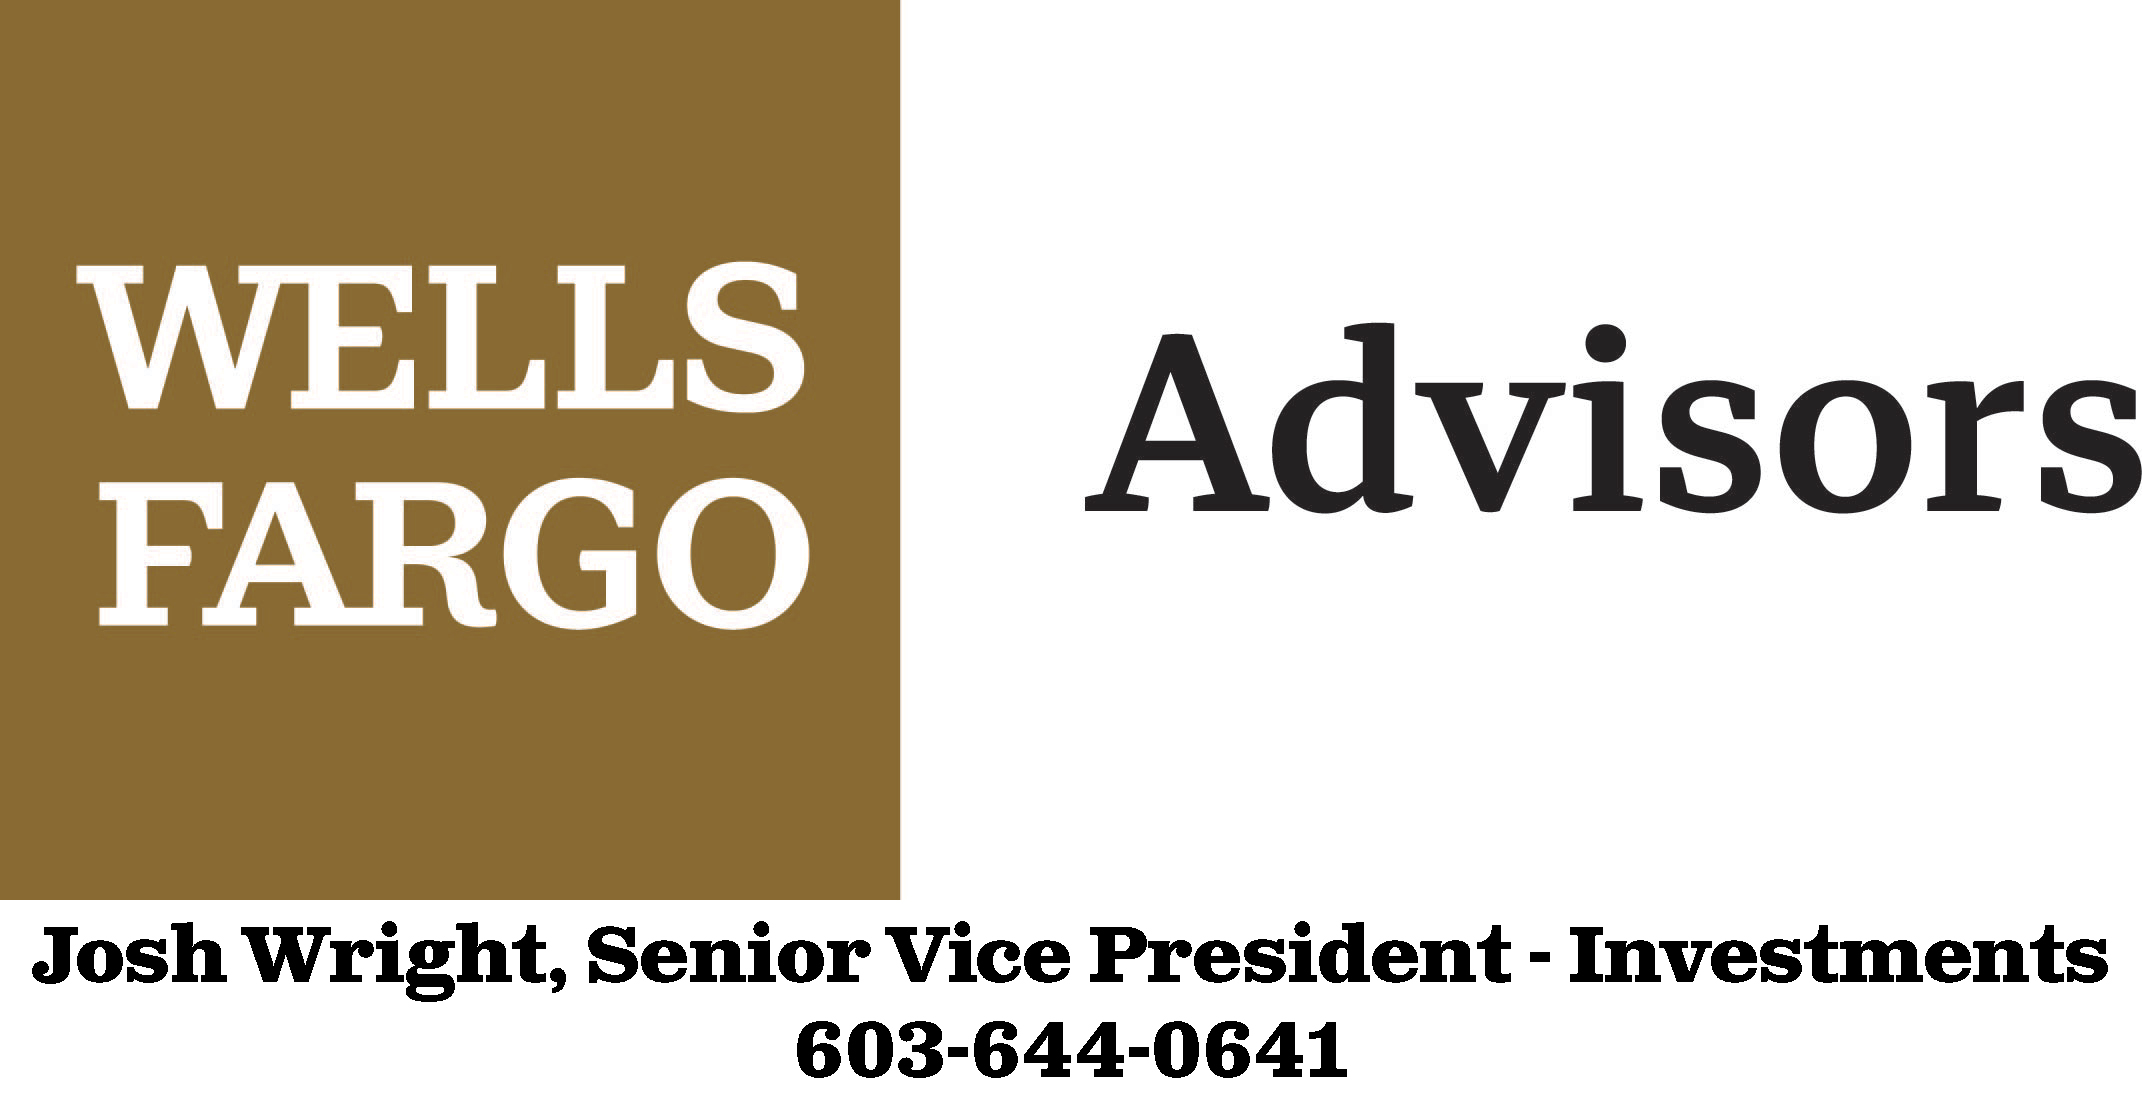 V Wells Fargo Advisors